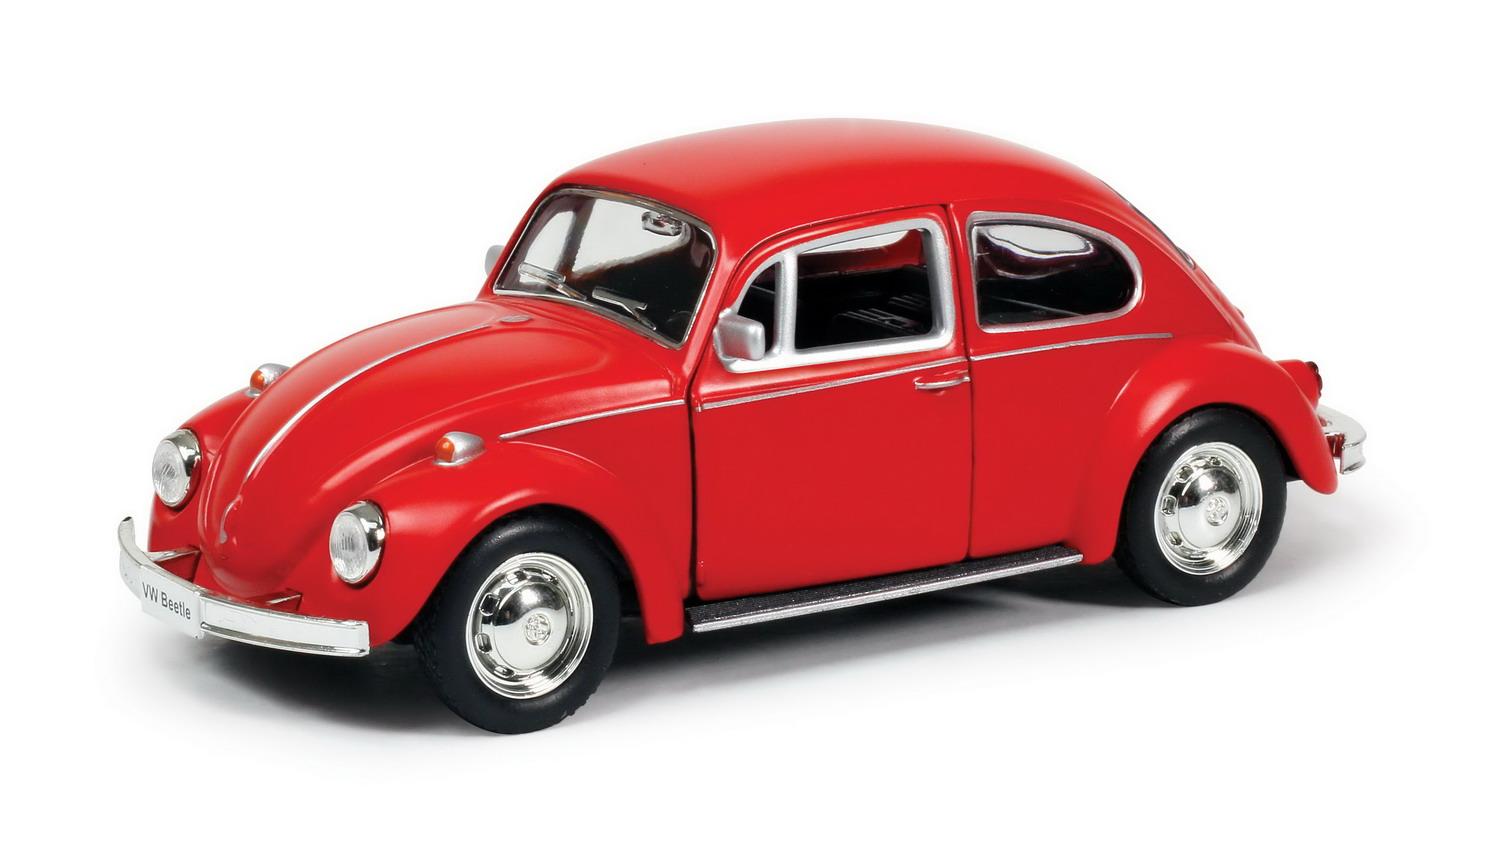 Машина металлическая RMZ City 1:32 Volkswagen Beetle 1967, красный матовый цвет original remote key for vw volkswagen 5k0837202ad beetle caddy eos golf jetta polo scirocco tiguan touran up 5k0 837 202 ad